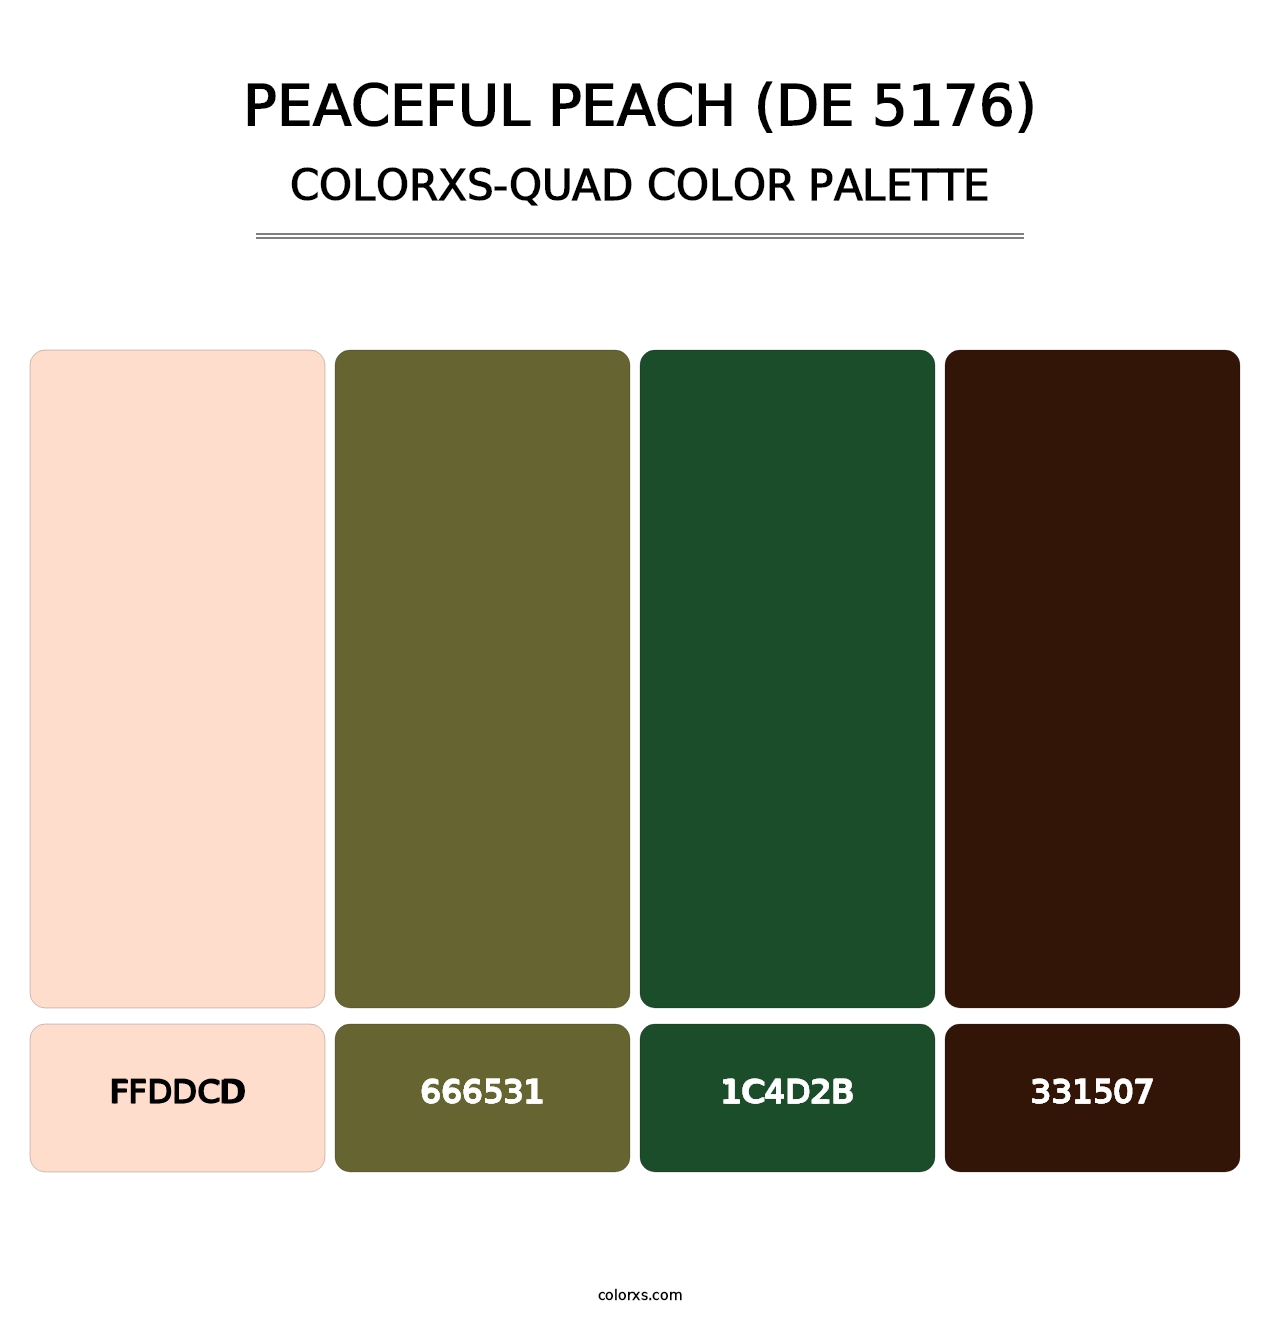 Peaceful Peach (DE 5176) - Colorxs Quad Palette